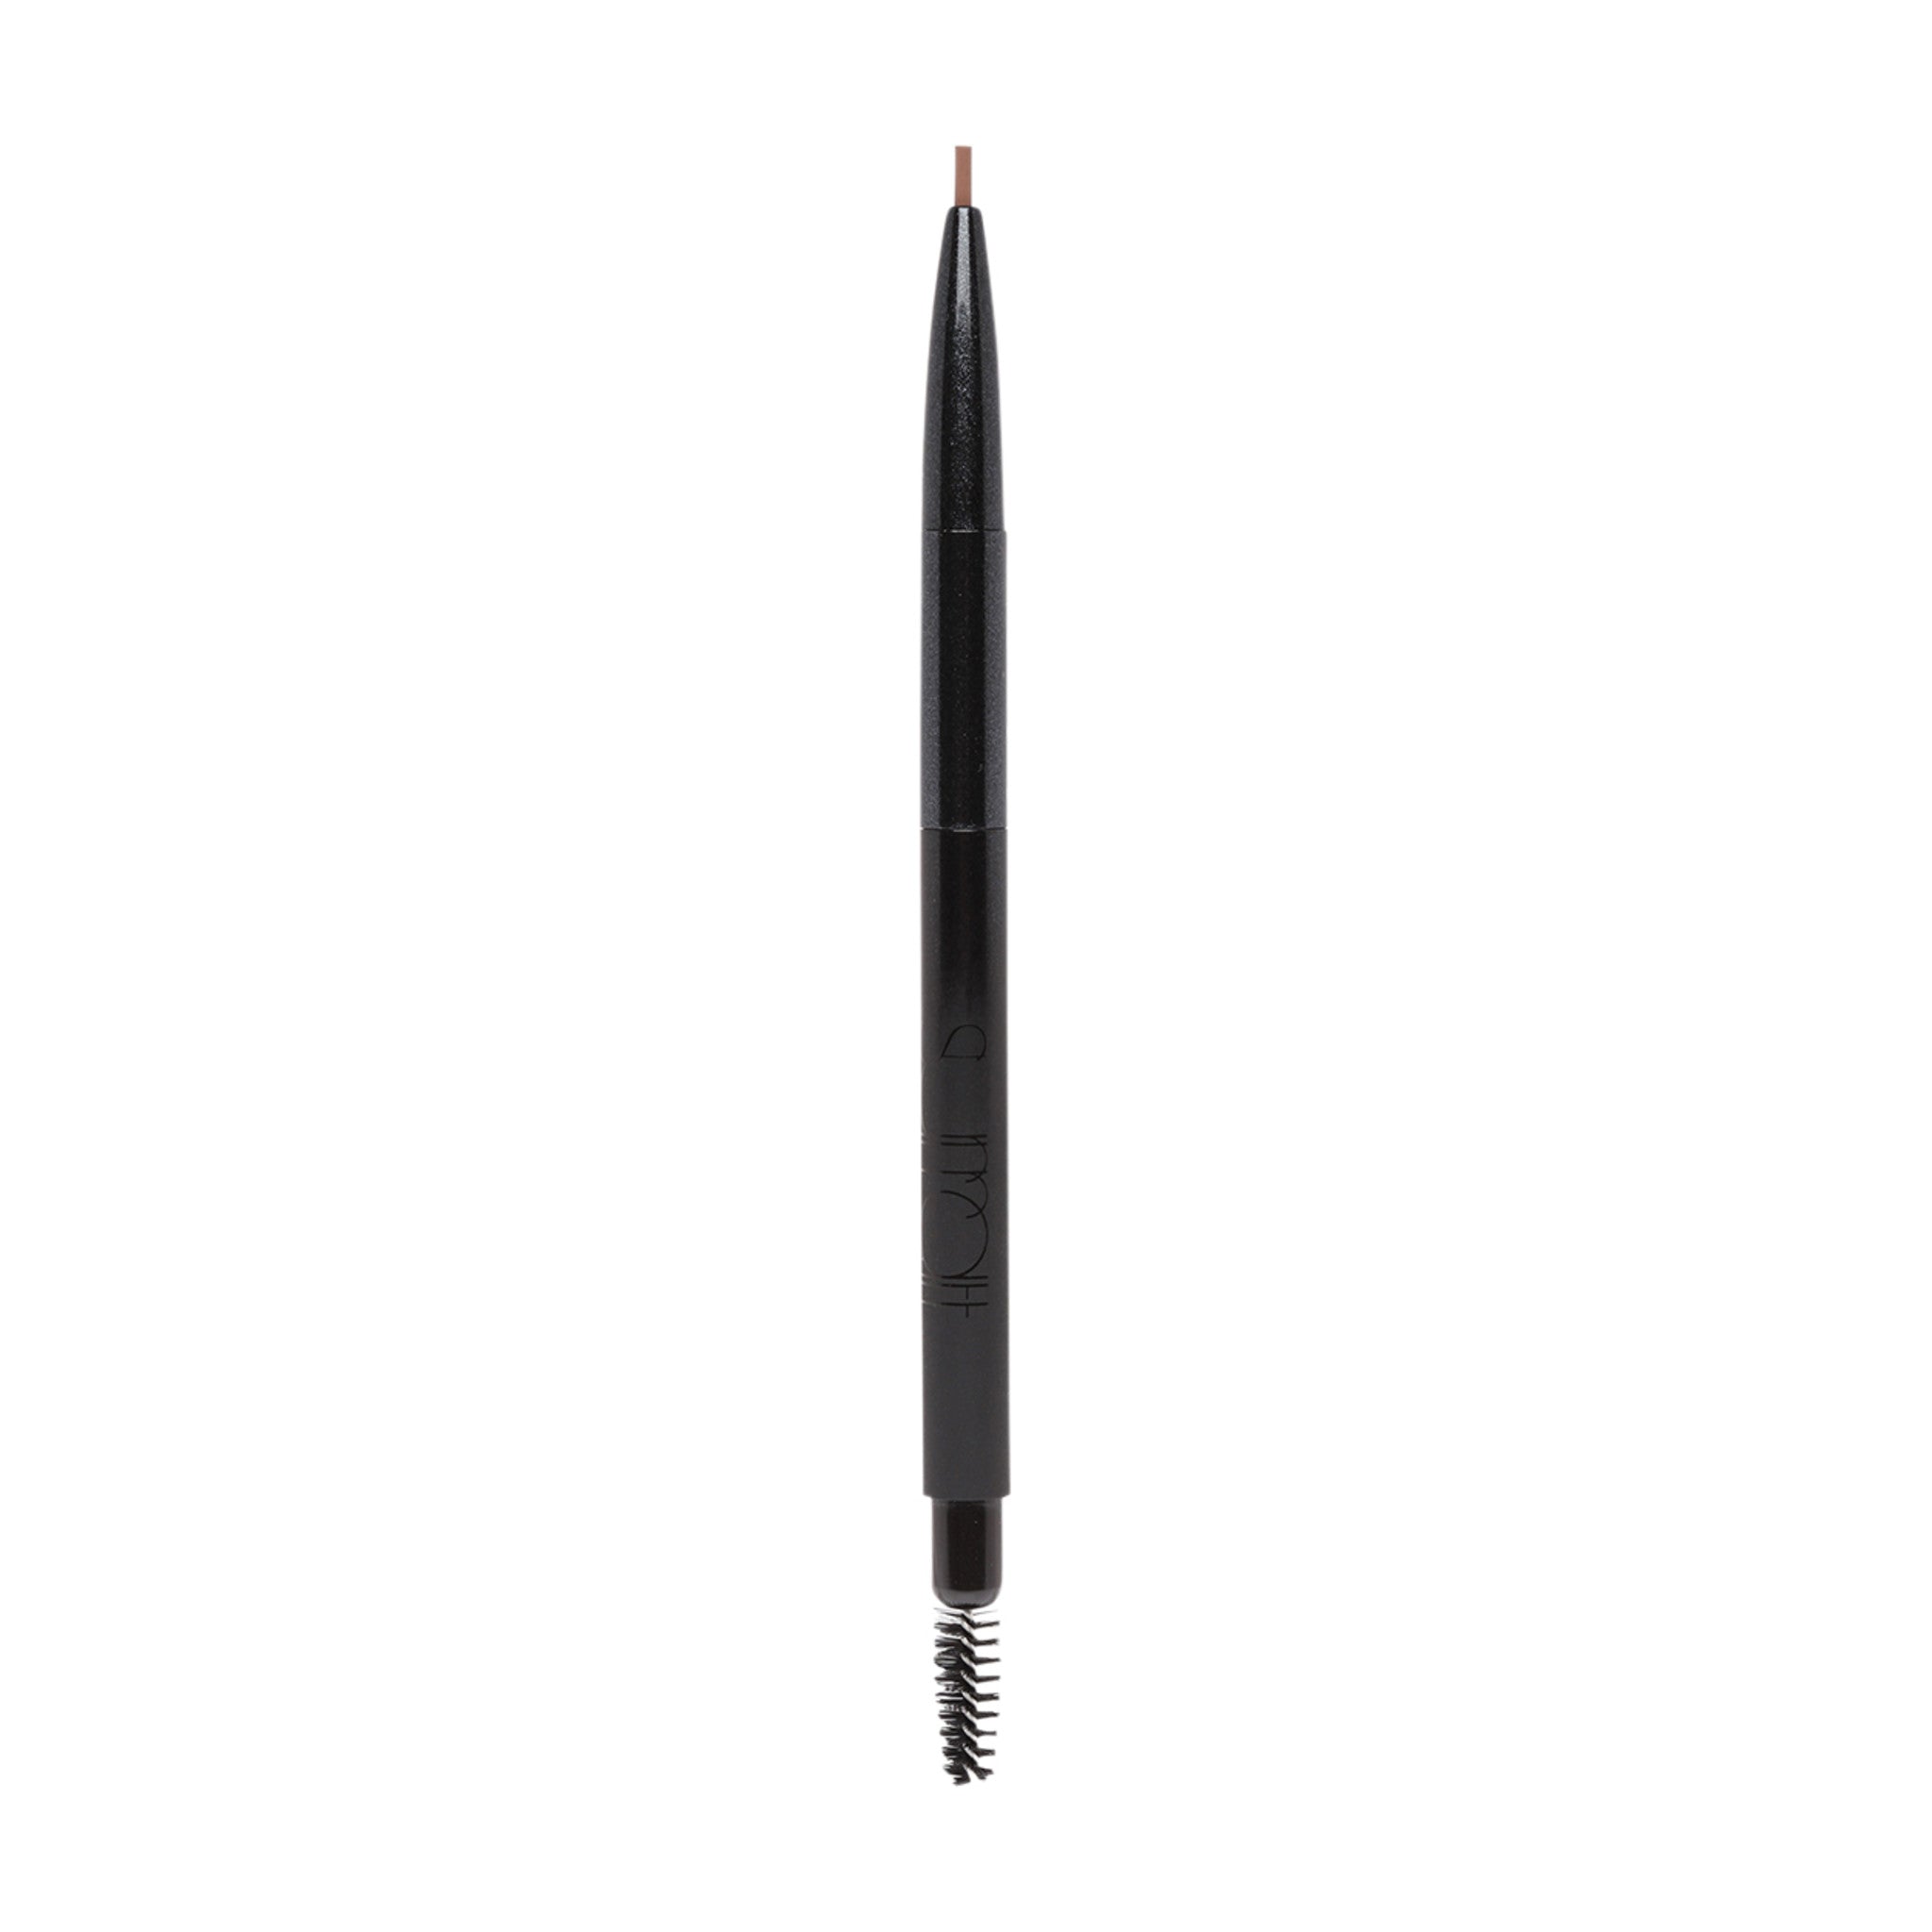 Buy Sleek Micro-Fine Brow Pencil Blonde